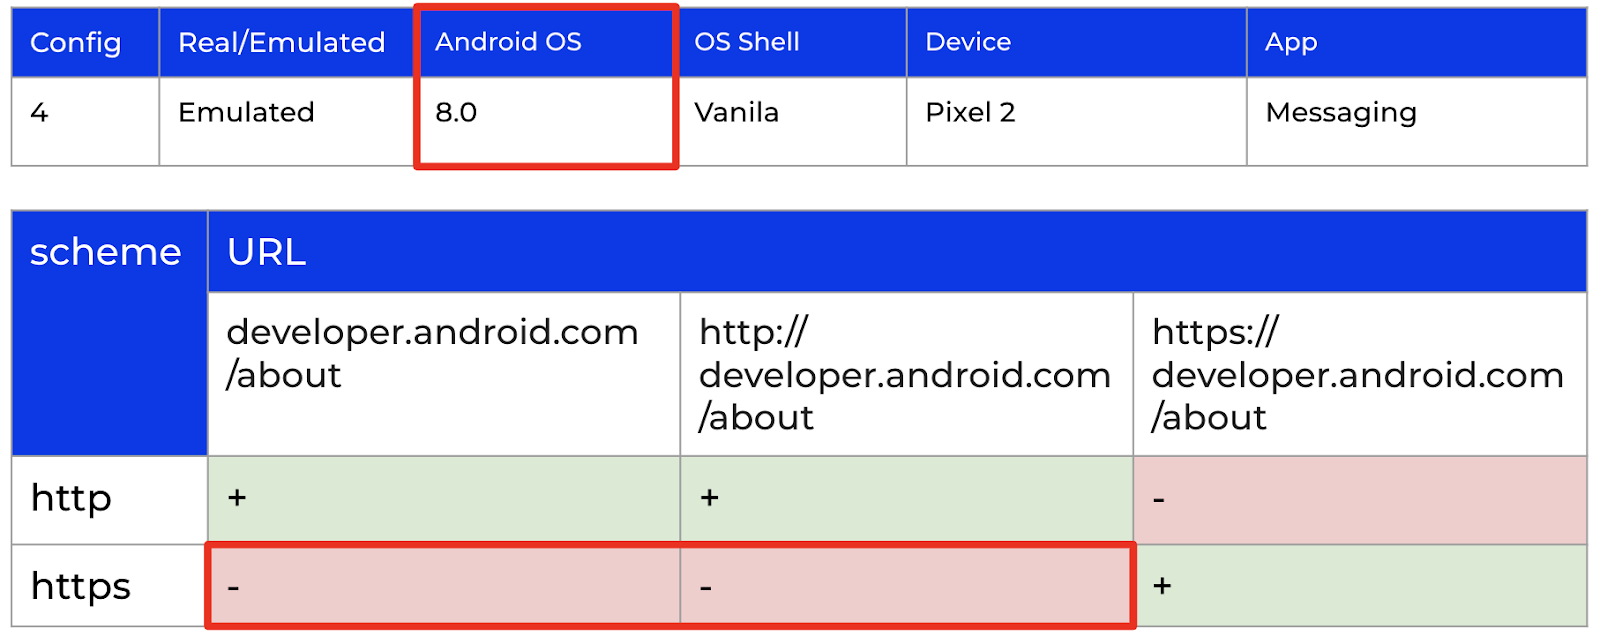 Результаты проверки гипотезы о влиянии версии Android ОС для 8.0 (Config 4).